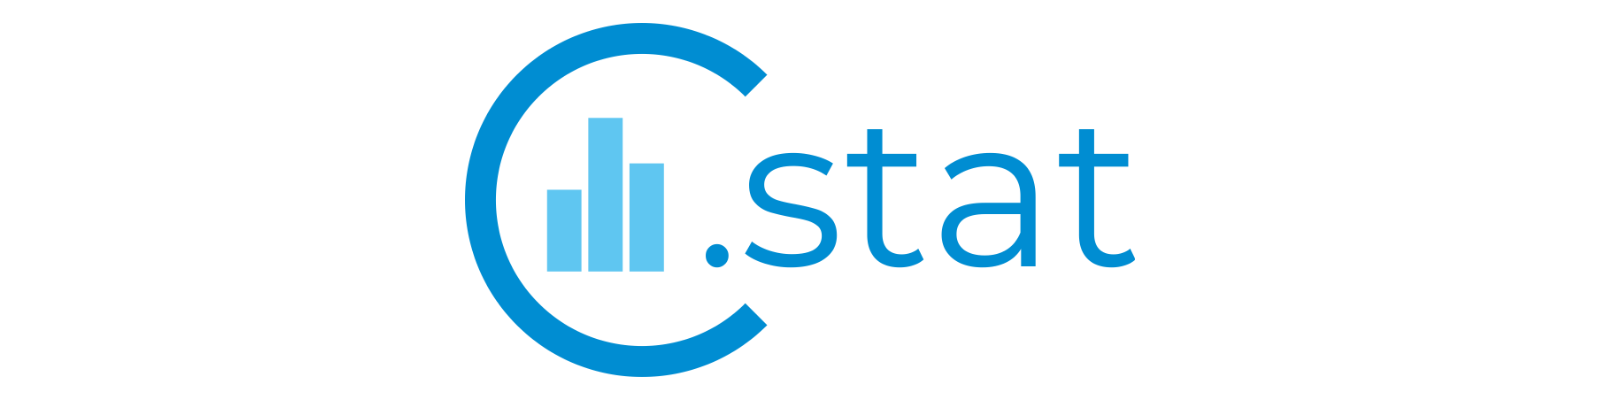 Presentazione C-STAT - Le Camere di Commercio per il Sistema Statistico Nazionale - Centro Studi Tagliacarne